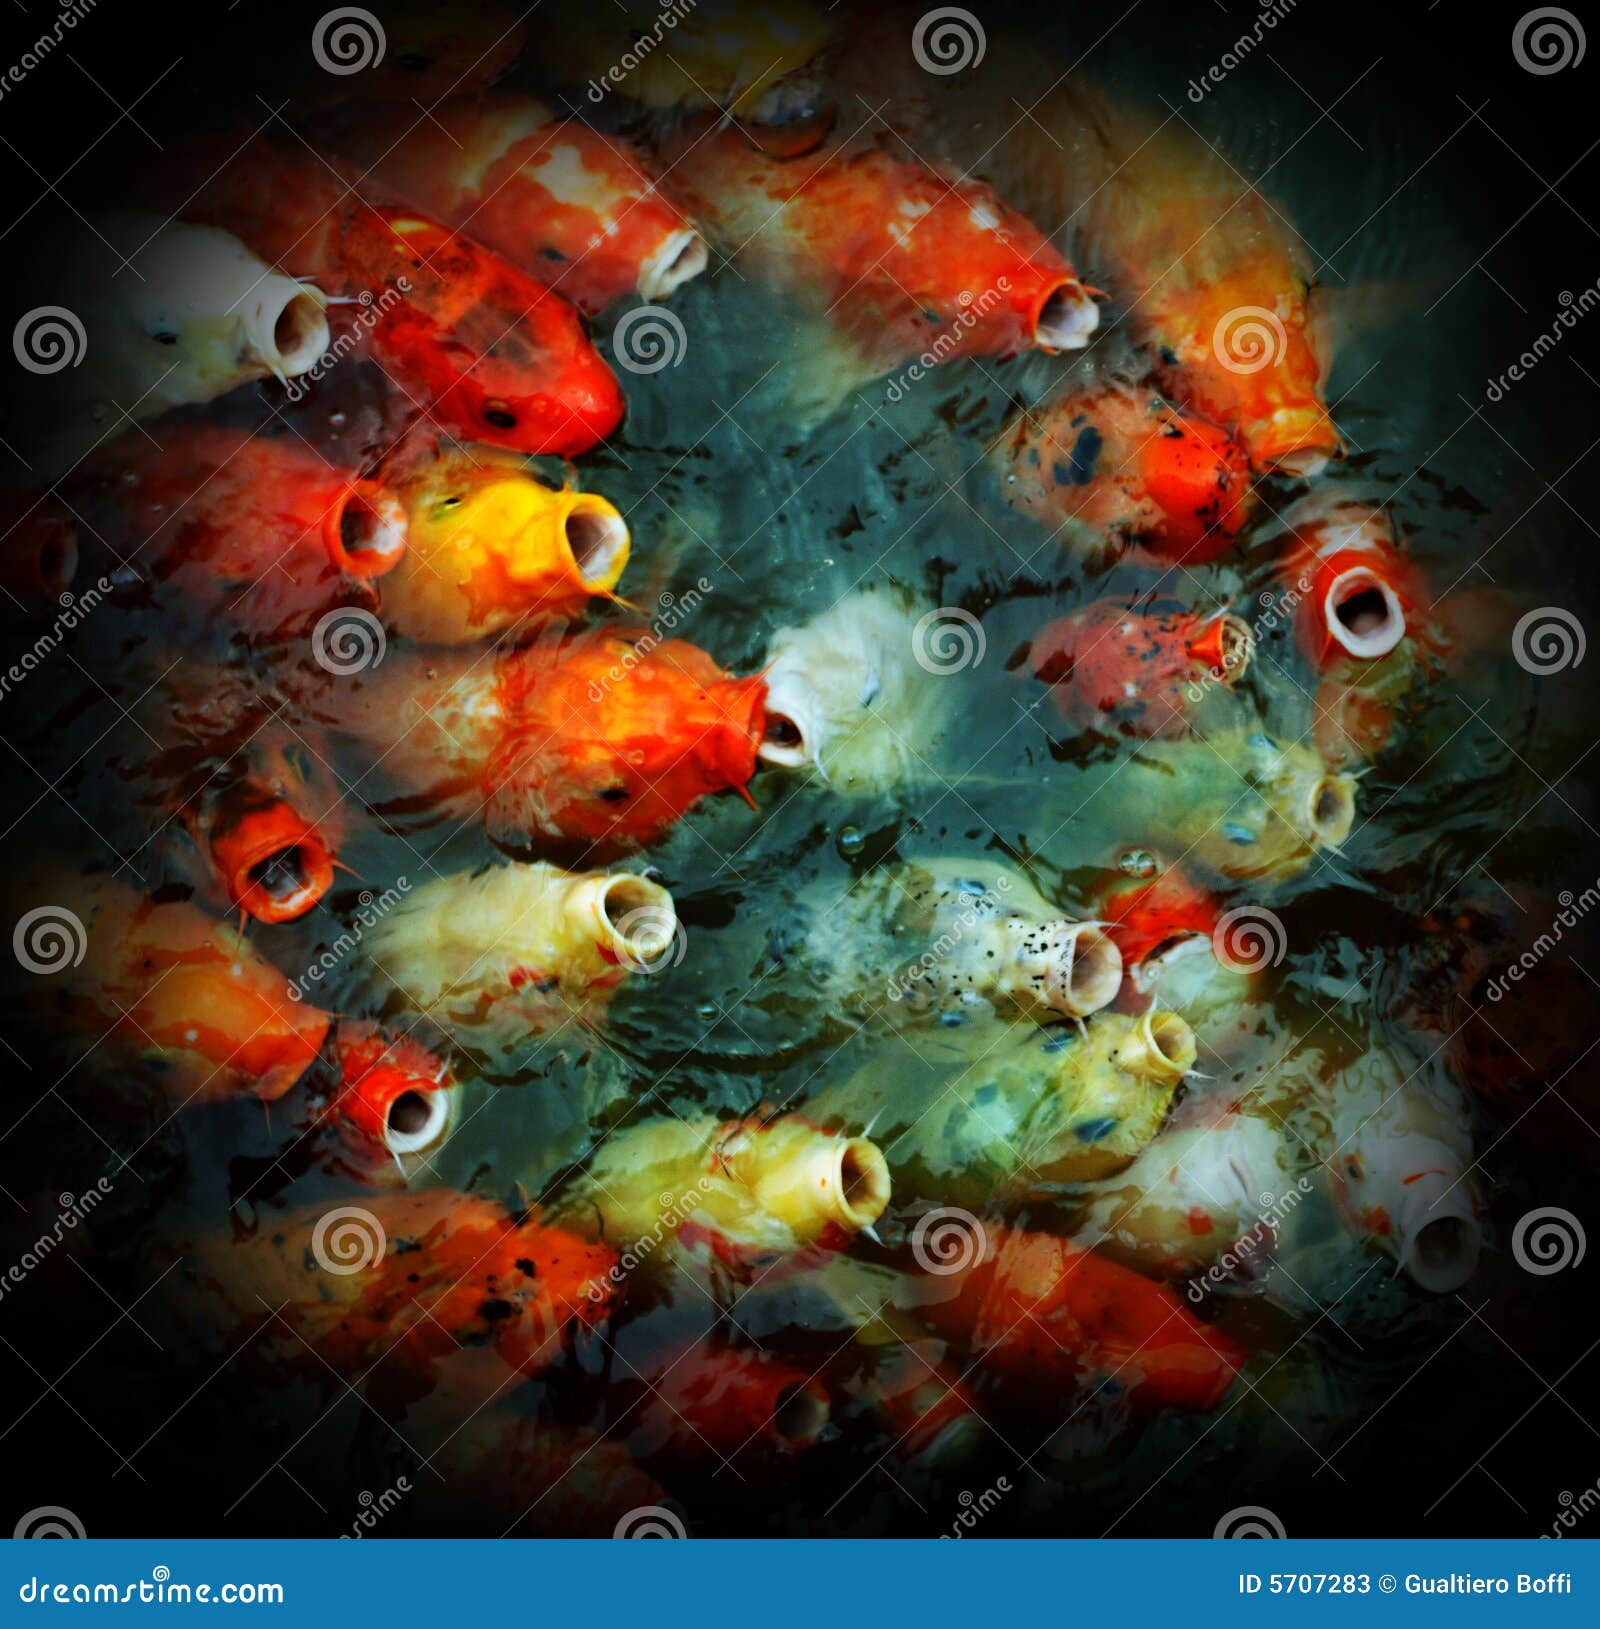 Wallpaper ID 628561  koi fish hd fractal 2K digitalartwork free  download